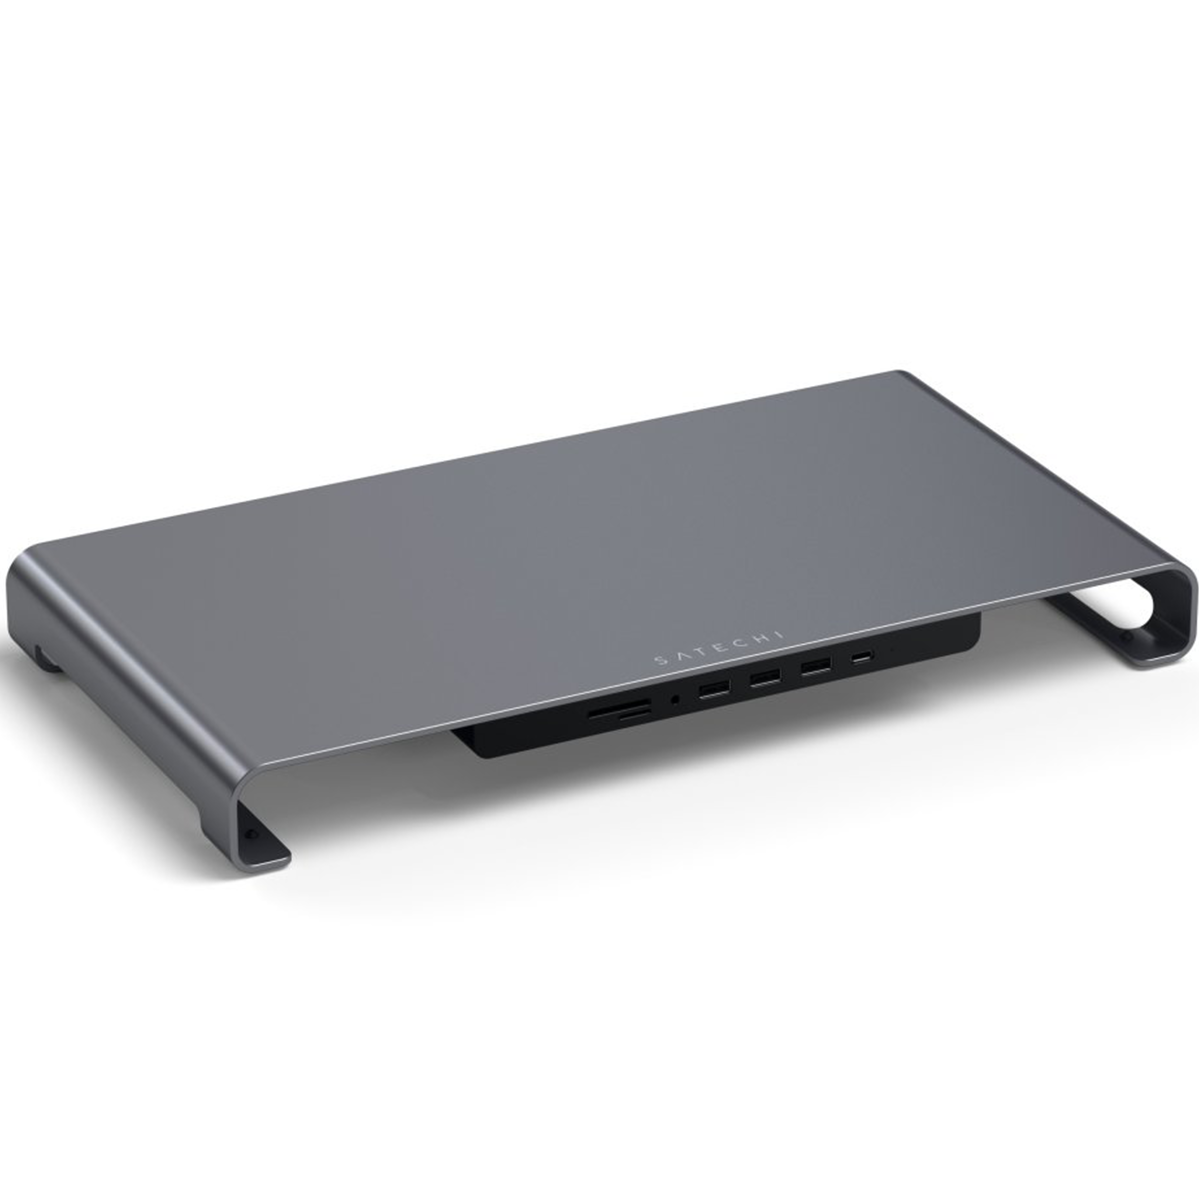 Подставка для iMac или монитора Satechi Aluminum USB-C Monitor Stand Hub XL - Space Gray (ST-UCSHXLM)